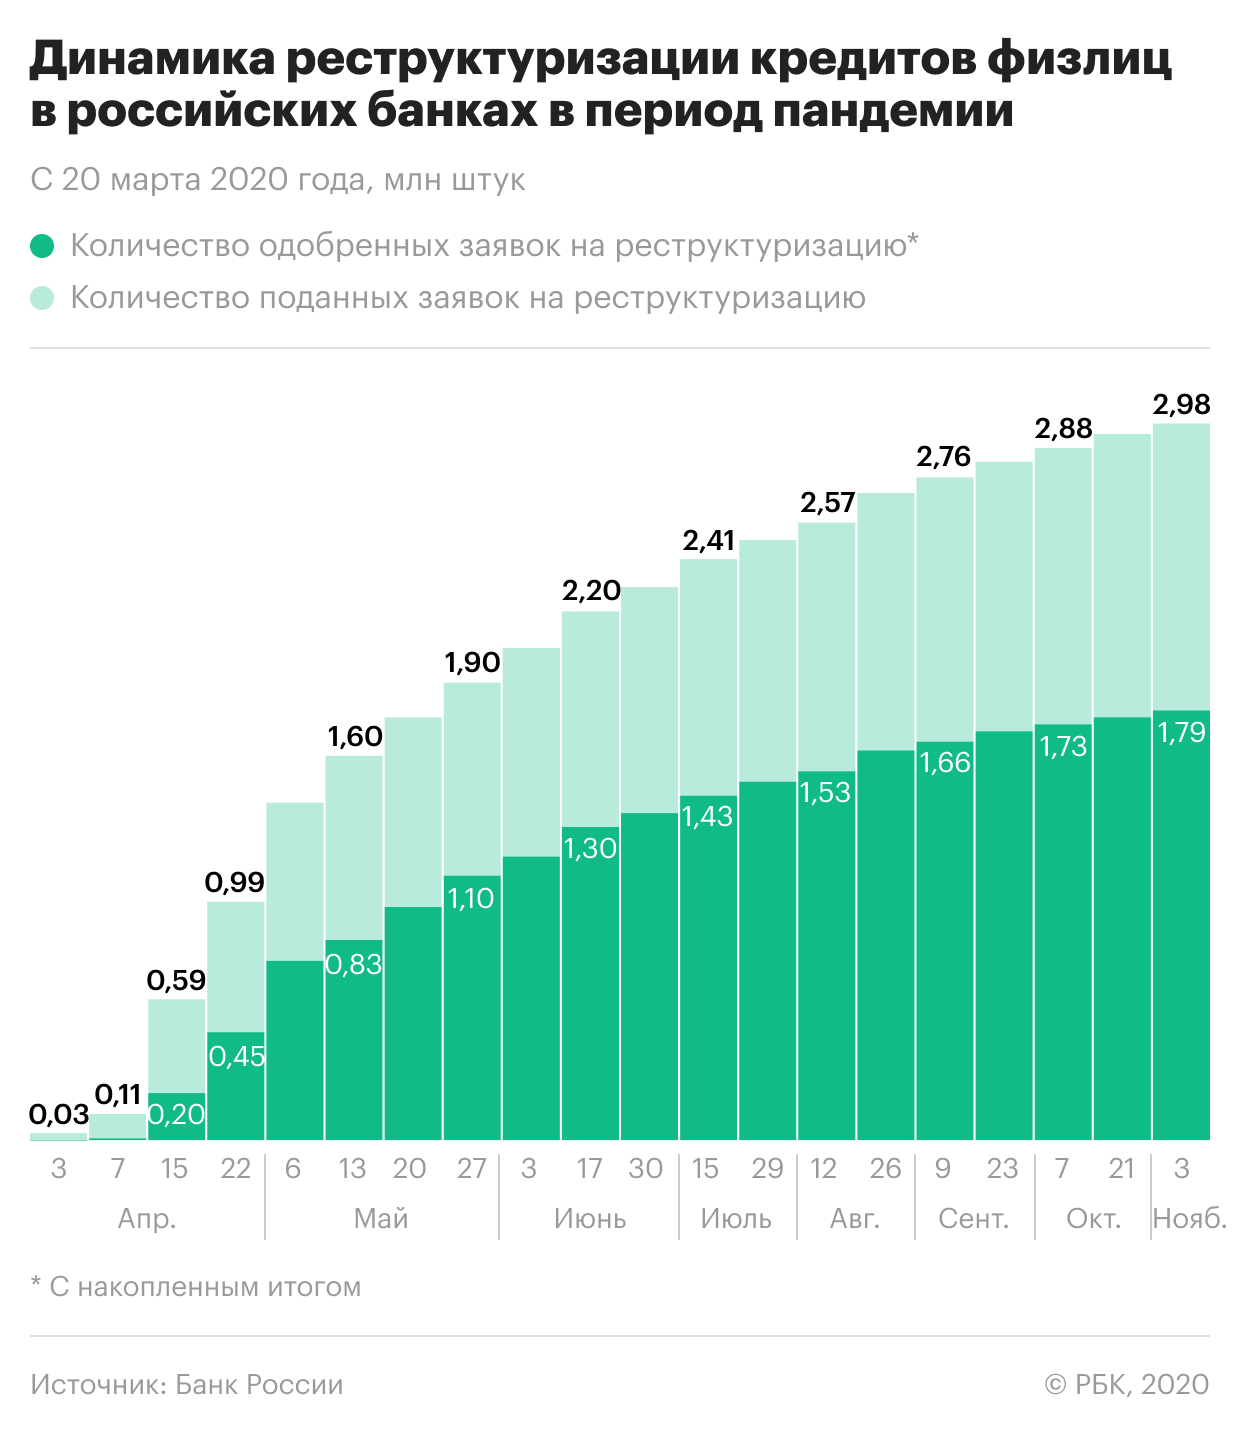 Банки оценили уровень неплатежей россиян после каникул из-за пандемии